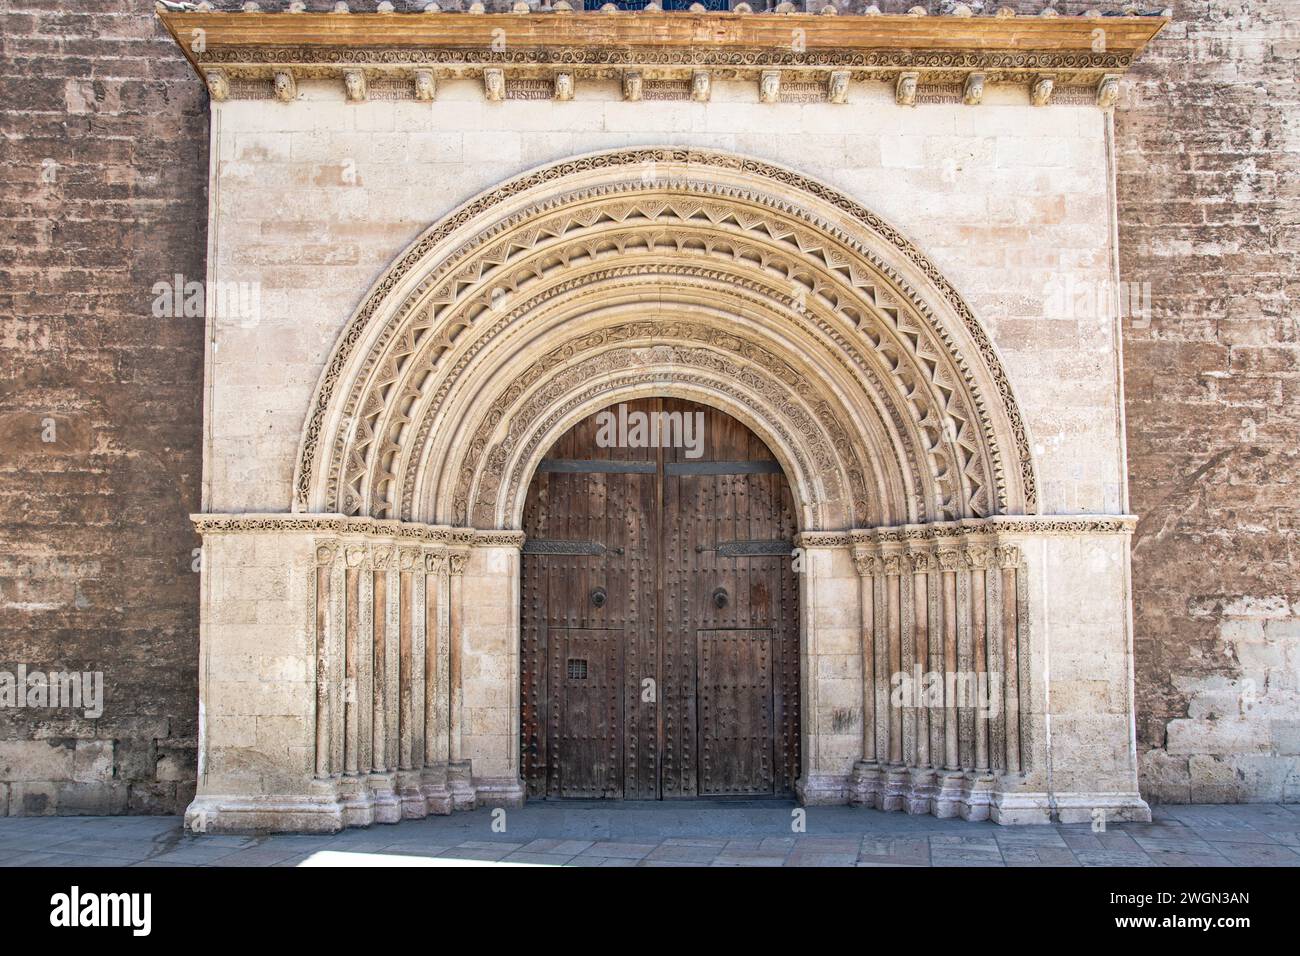 Cathédrale de Valence, cathédrale Sainte-Marie, est une église catholique romaine à Valence, Espagne - détail de l'entrée extérieure Banque D'Images